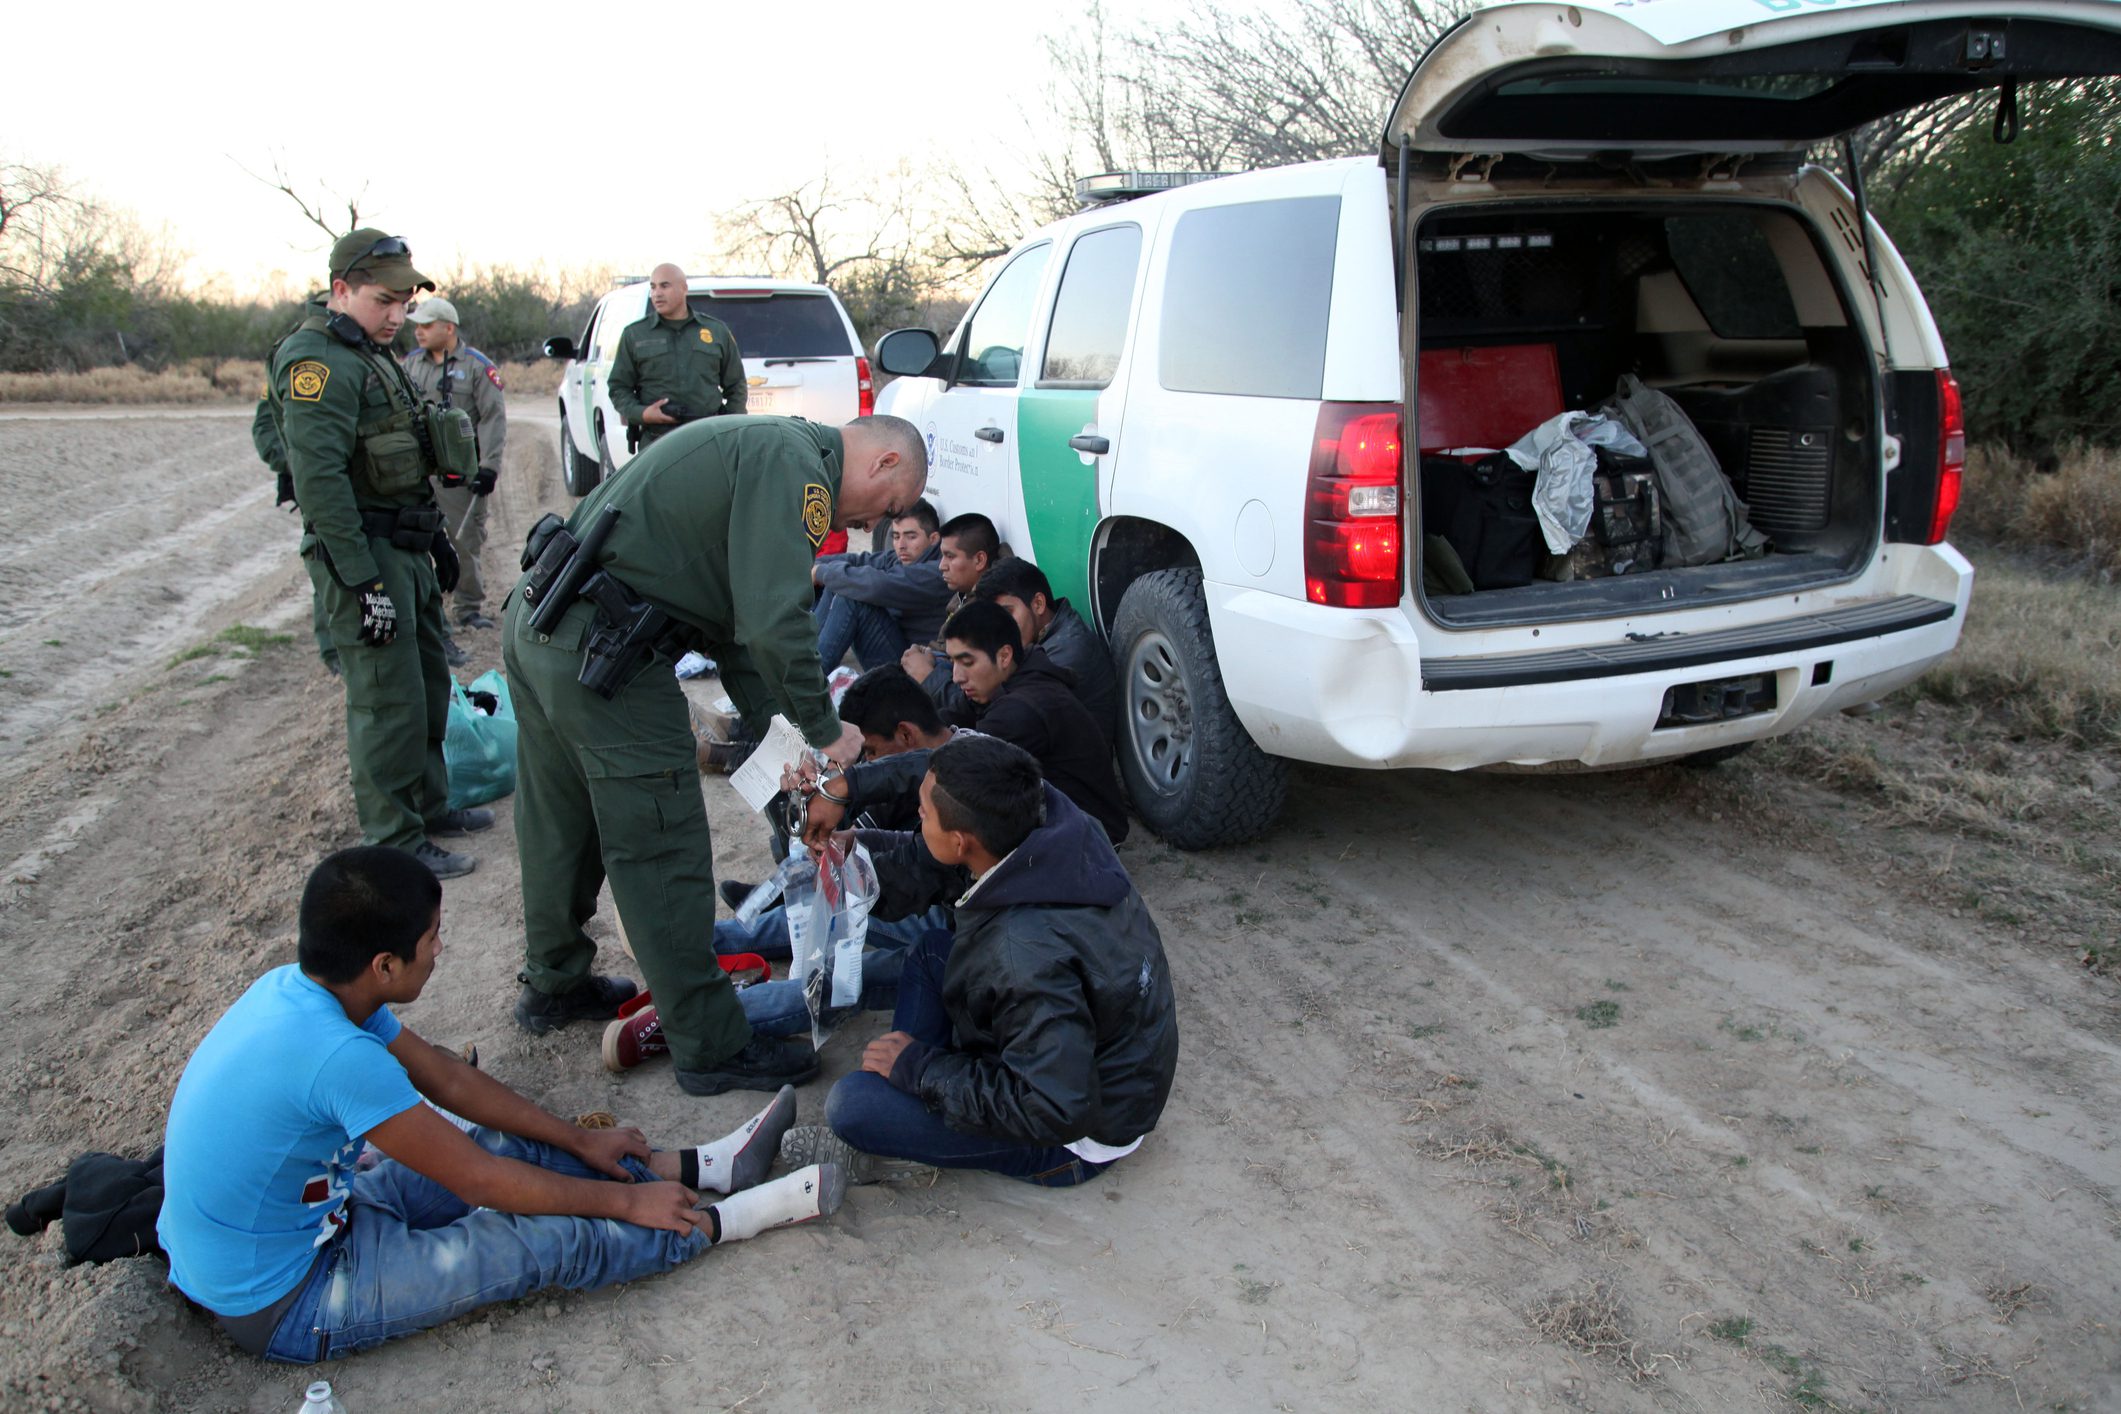 Border Patrol, Rio Grande Valley, Texas, Feb. 9, 2016